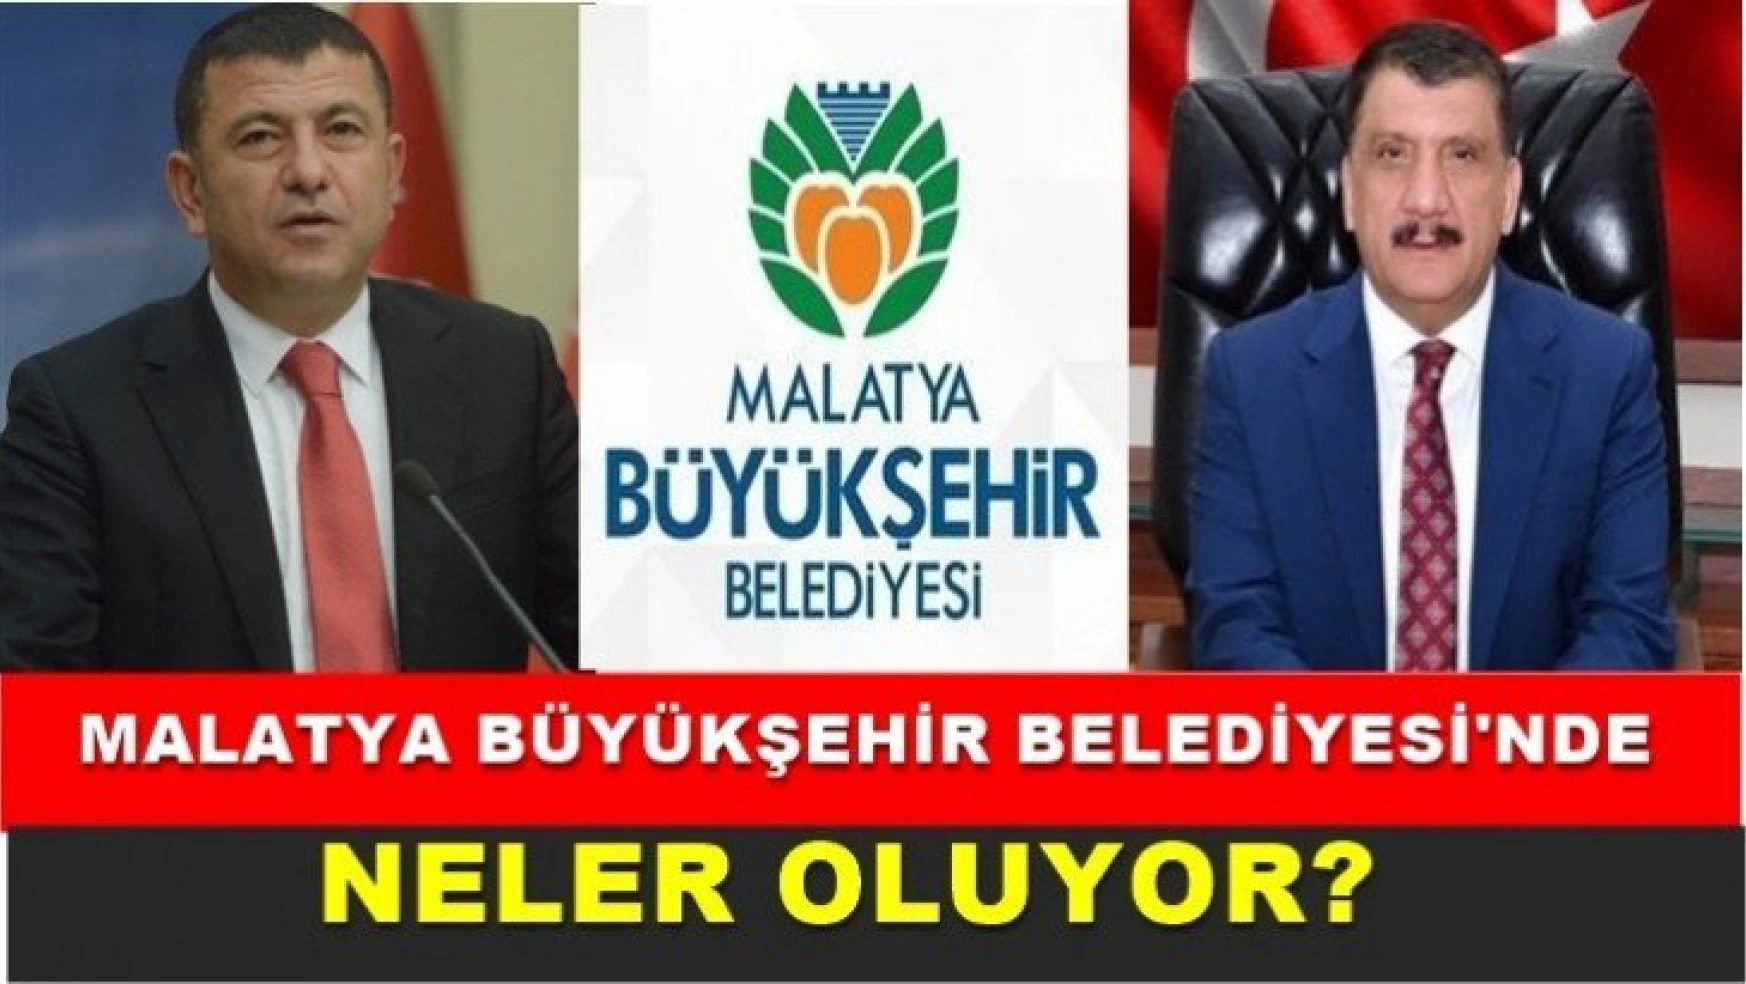 Malatya Büyükşehir Belediyesi'nde neler oluyor?